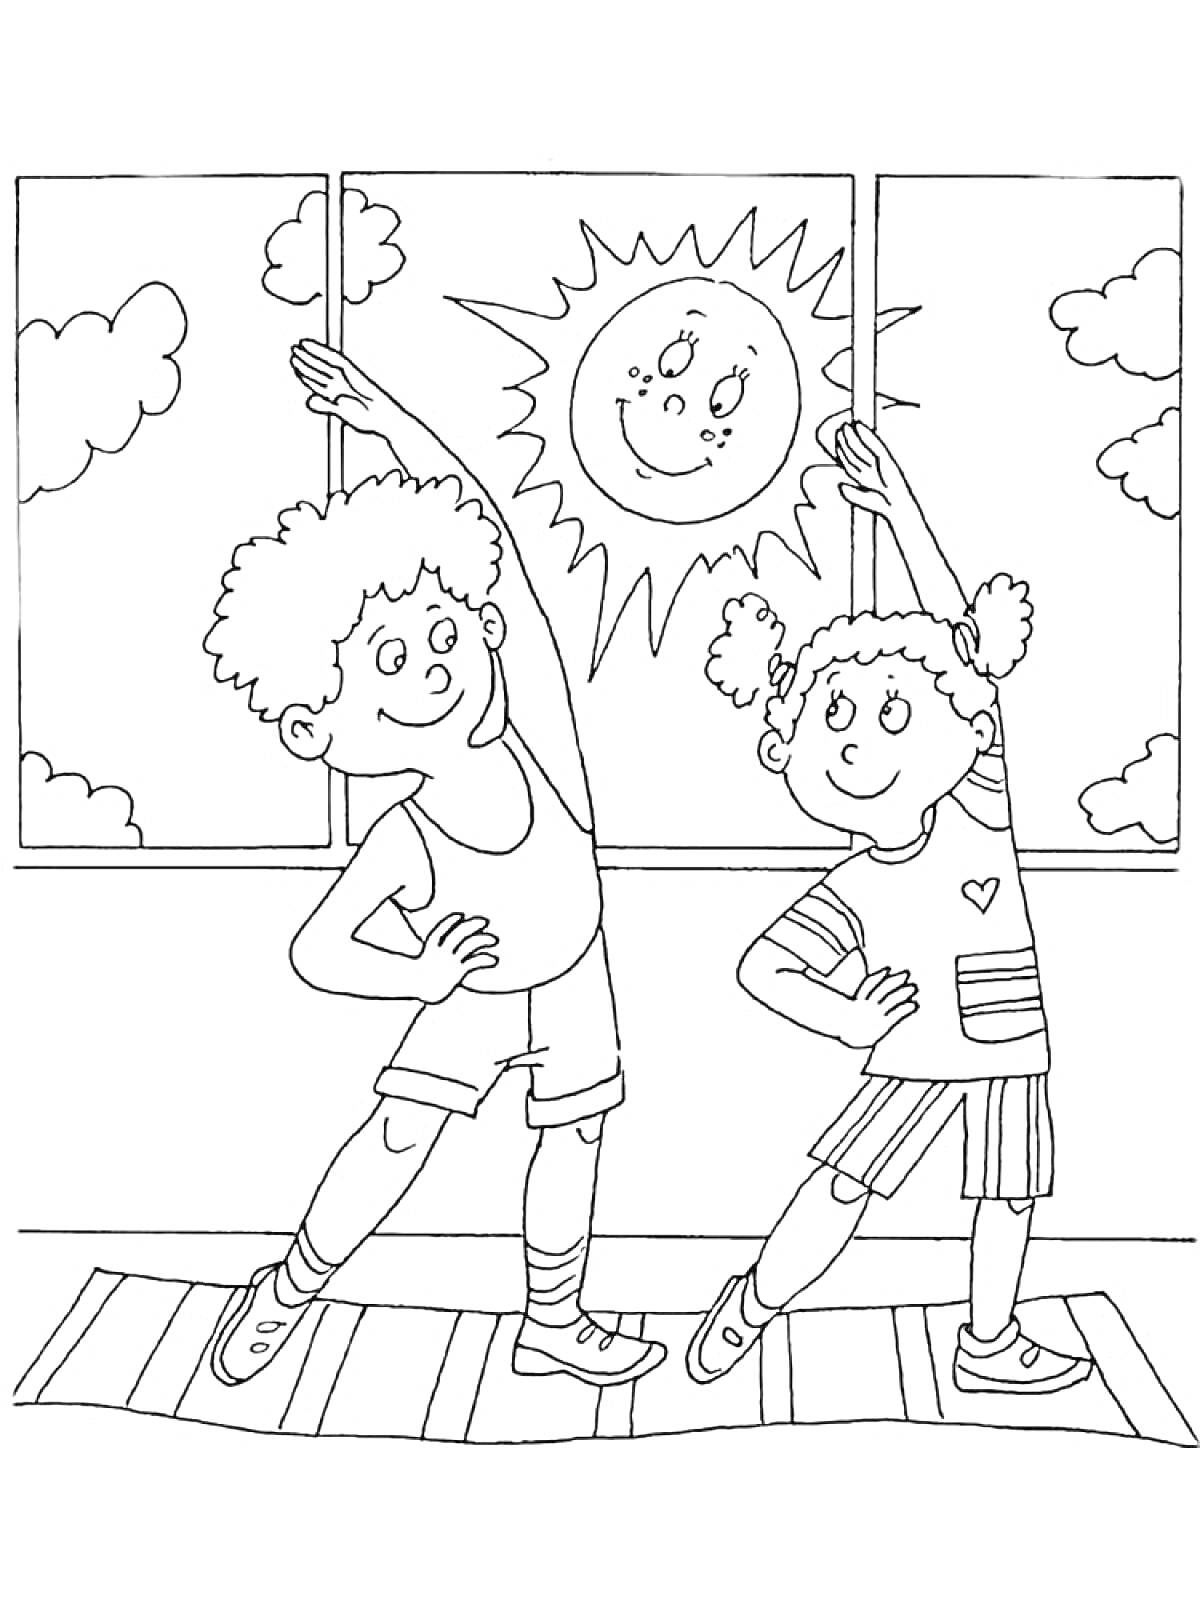 дети делают утреннюю зарядку у окна, на улице солнце и облака